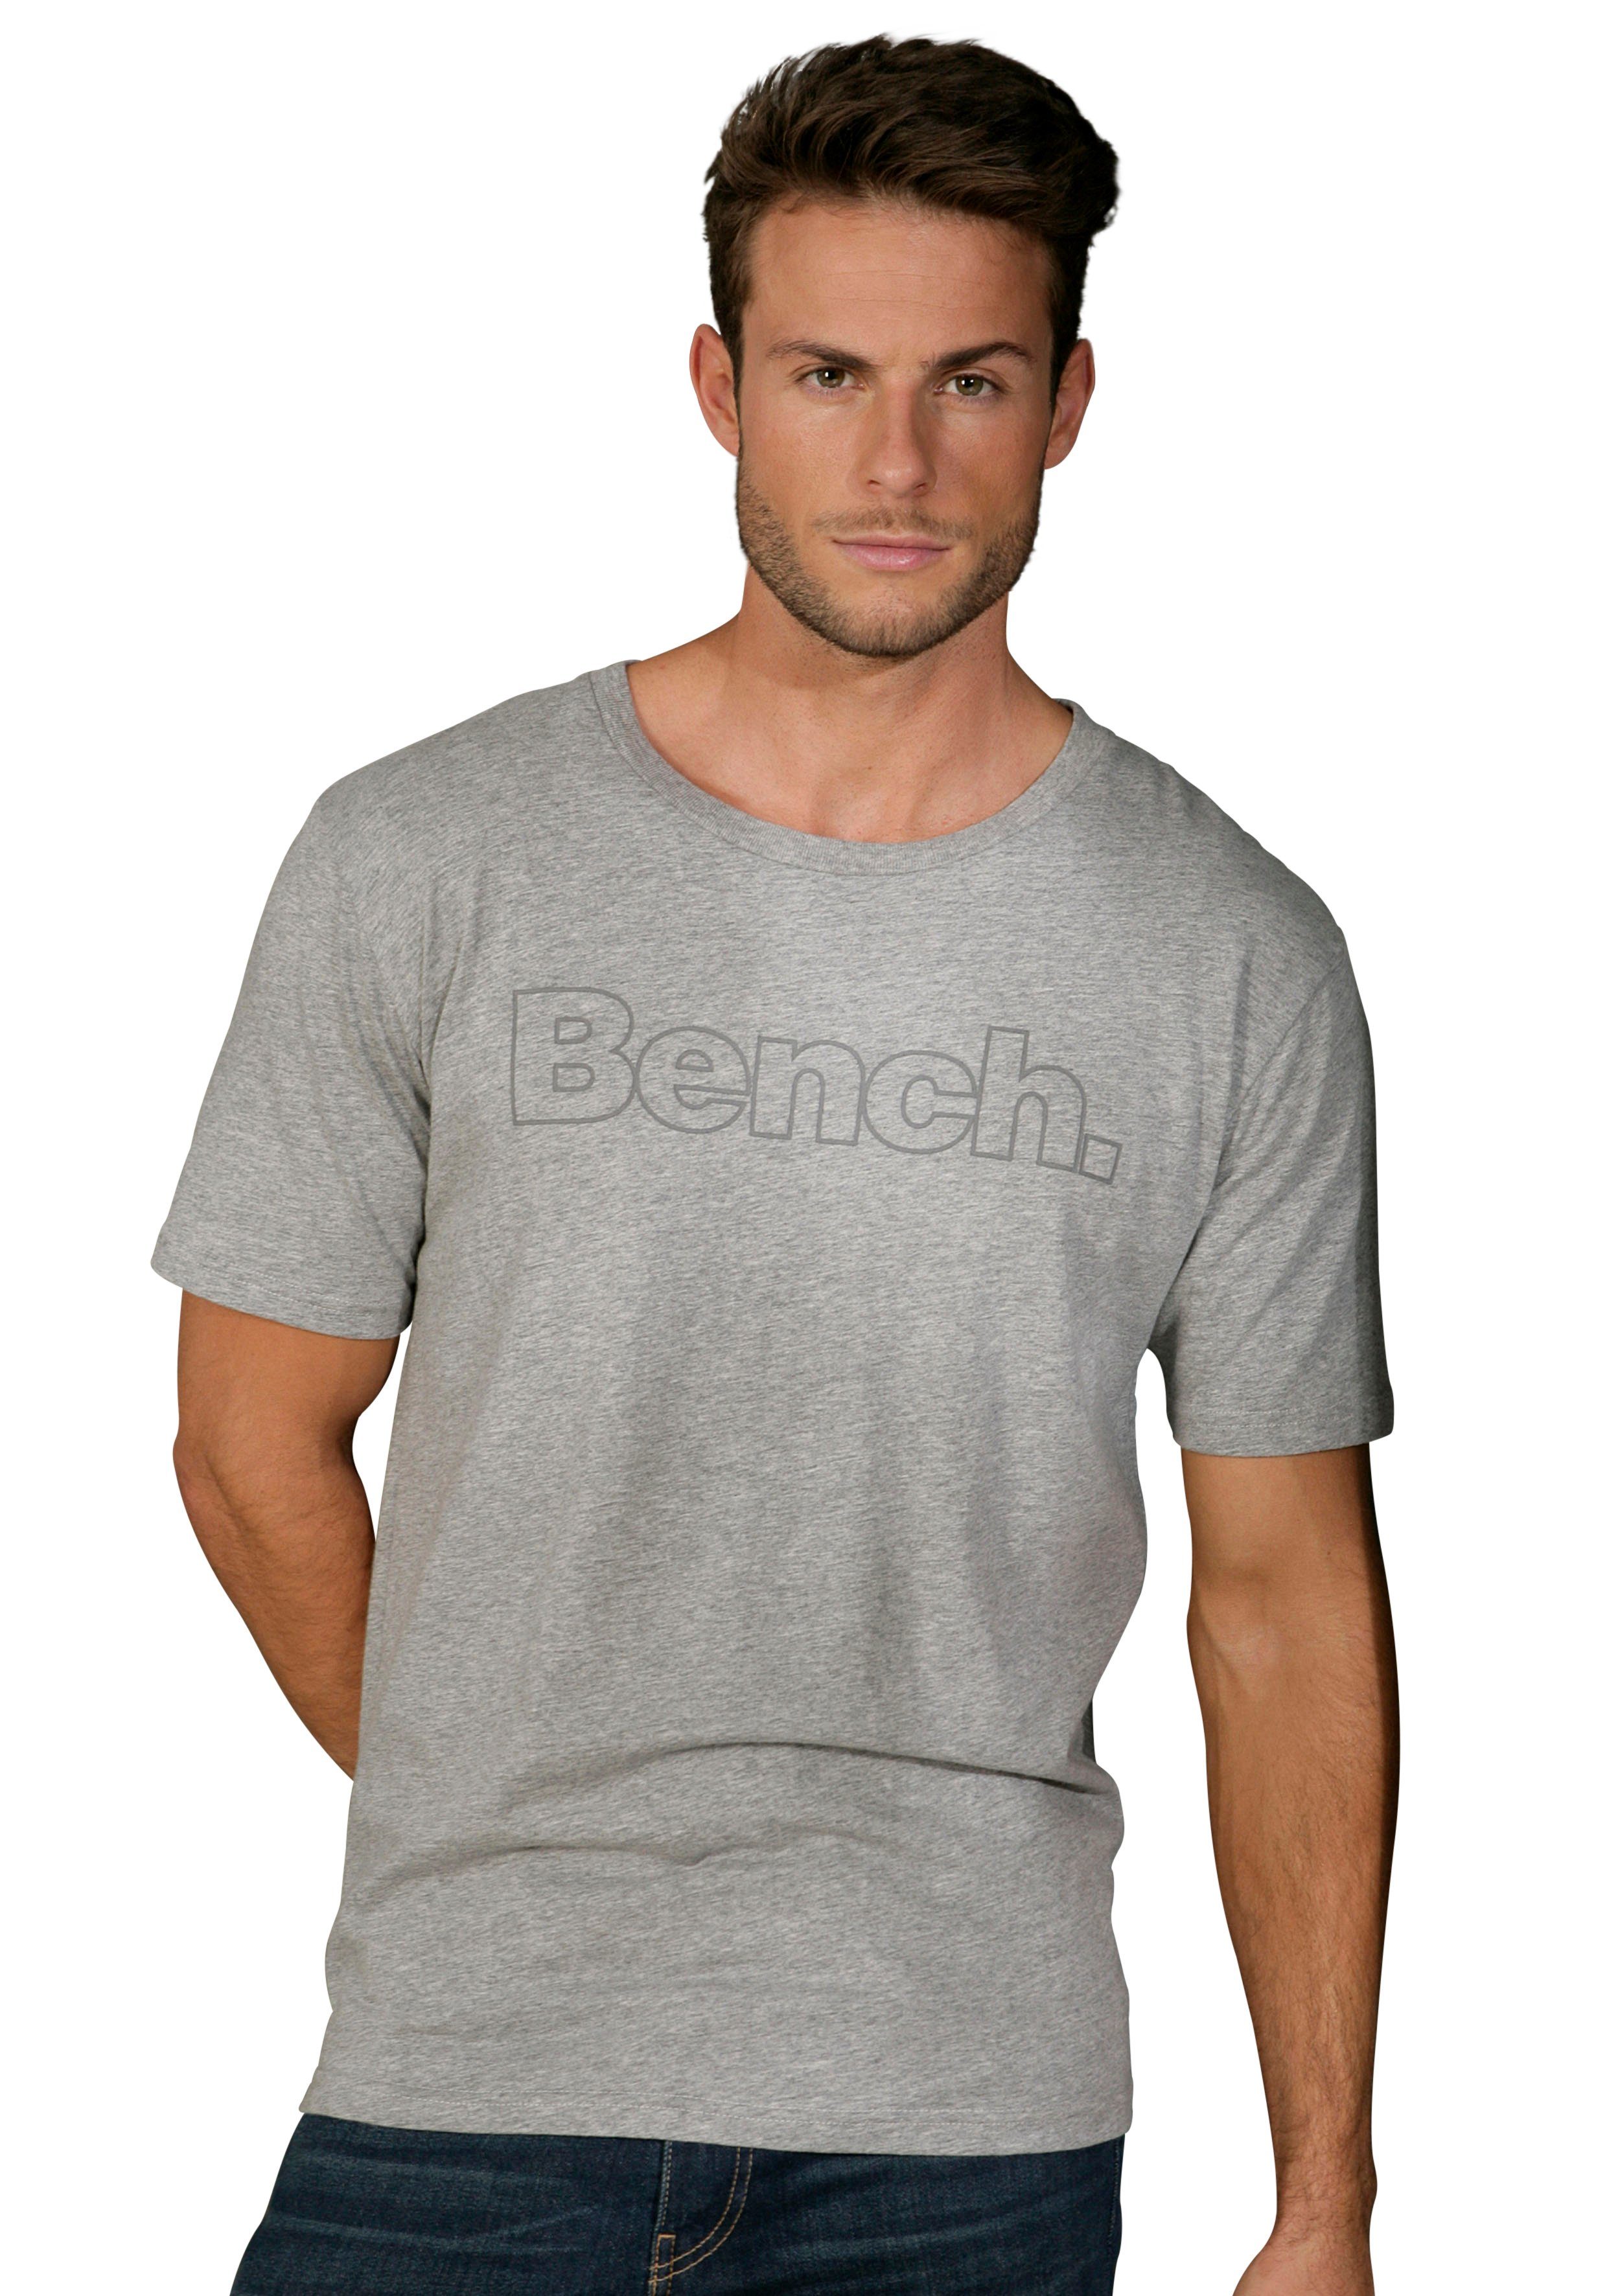 T-Shirt mit Print navy Loungewear Bench. (2-tlg) grau-meliert, vorn Bench.